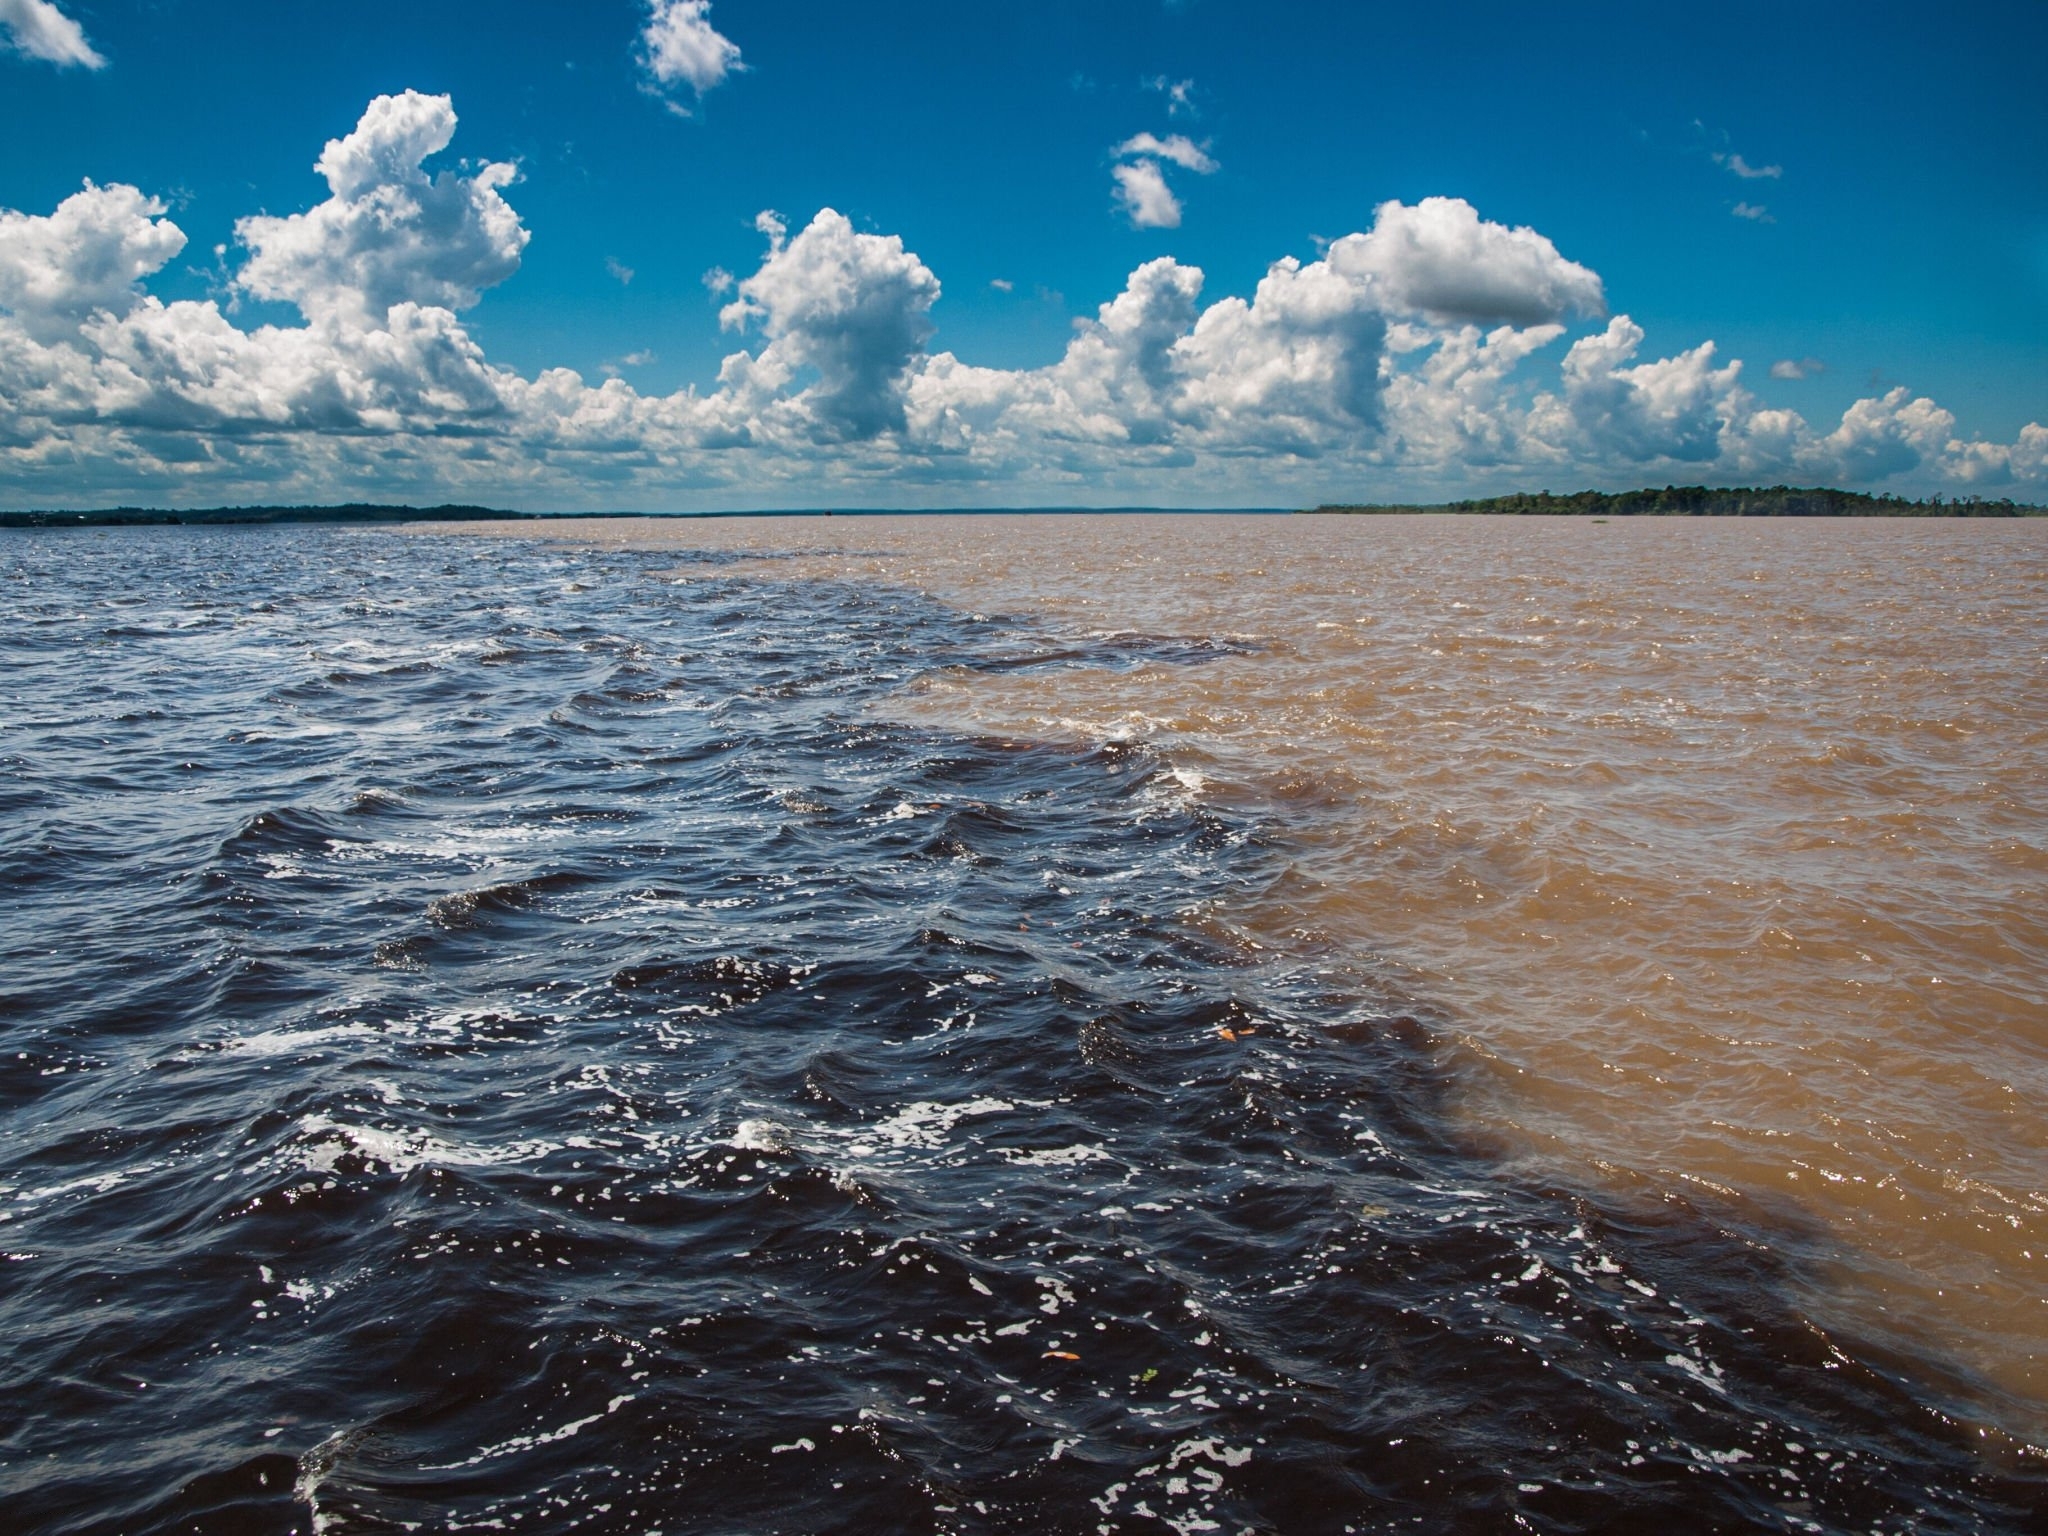 Aniversário de Manaus: conheça a história e curiosidades sobre a capital do Amazonas | Encontro das águas | Conexão123